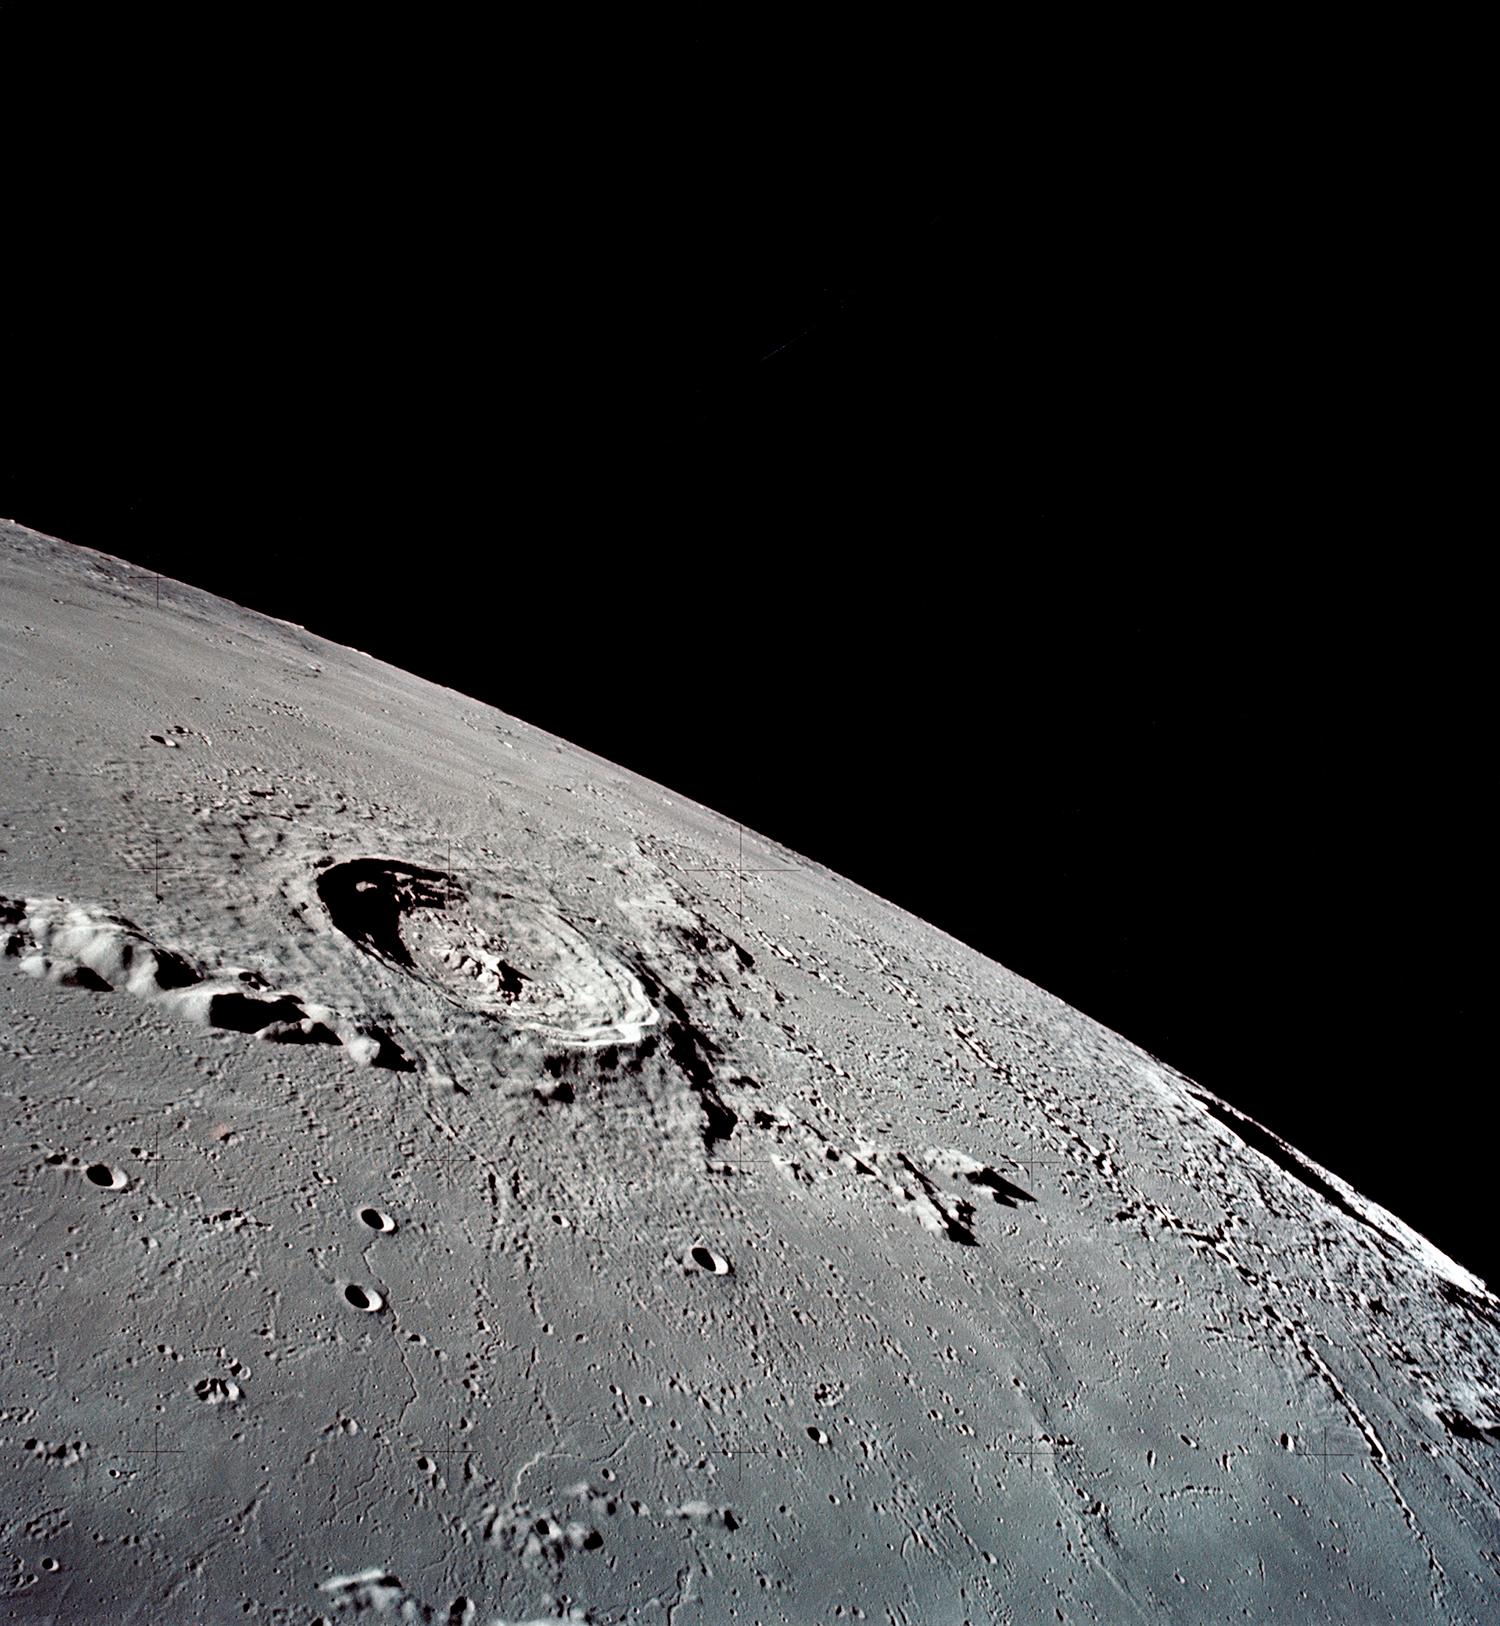 Mesačný kráter Eratosthenes s priemerom 59 km a hĺbkou 3 600 m odfotený posádkou Apolla 17. Vznikol pravdepodobne pred 3,2 miliardami rokov a je po ňom nazvané jedno z geologických období Mesiaca.